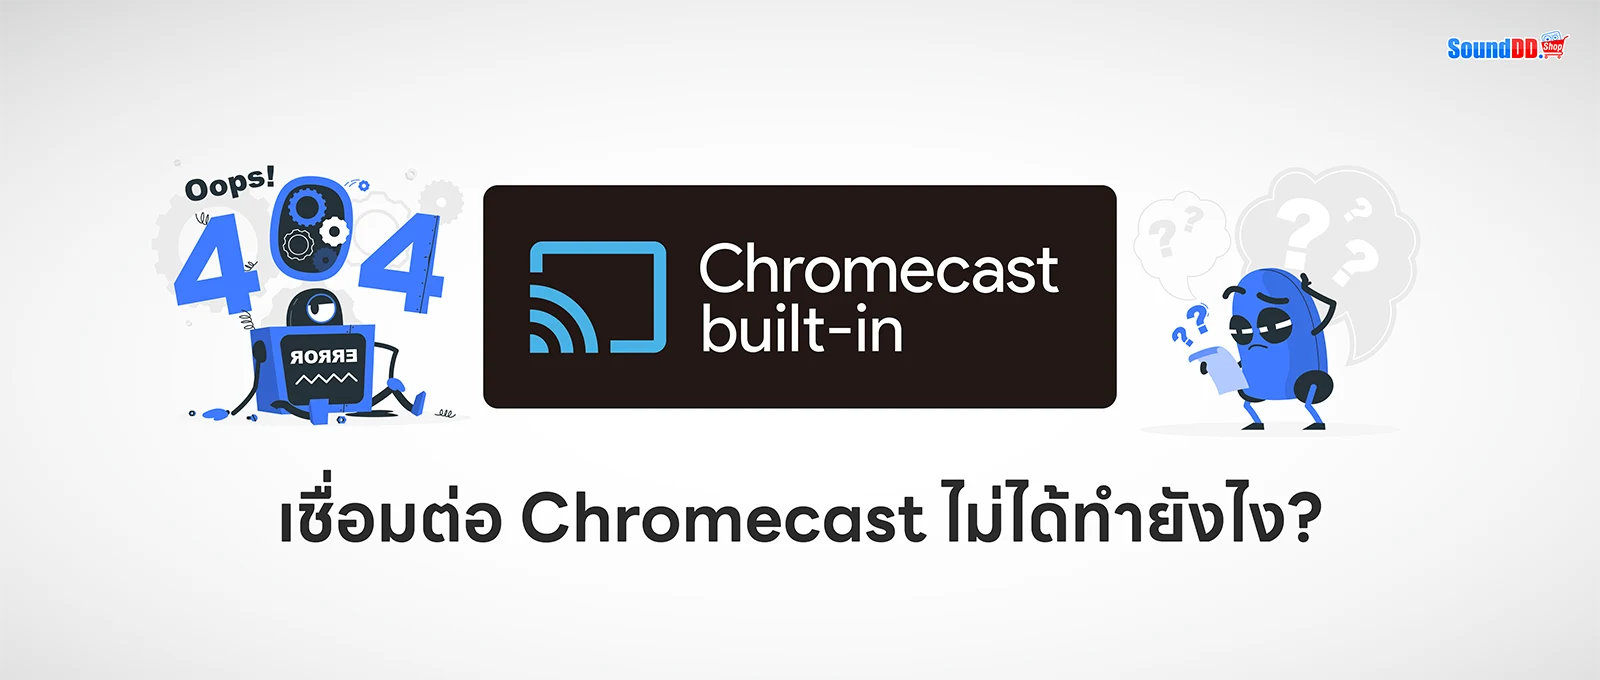 Chromecast Built-in